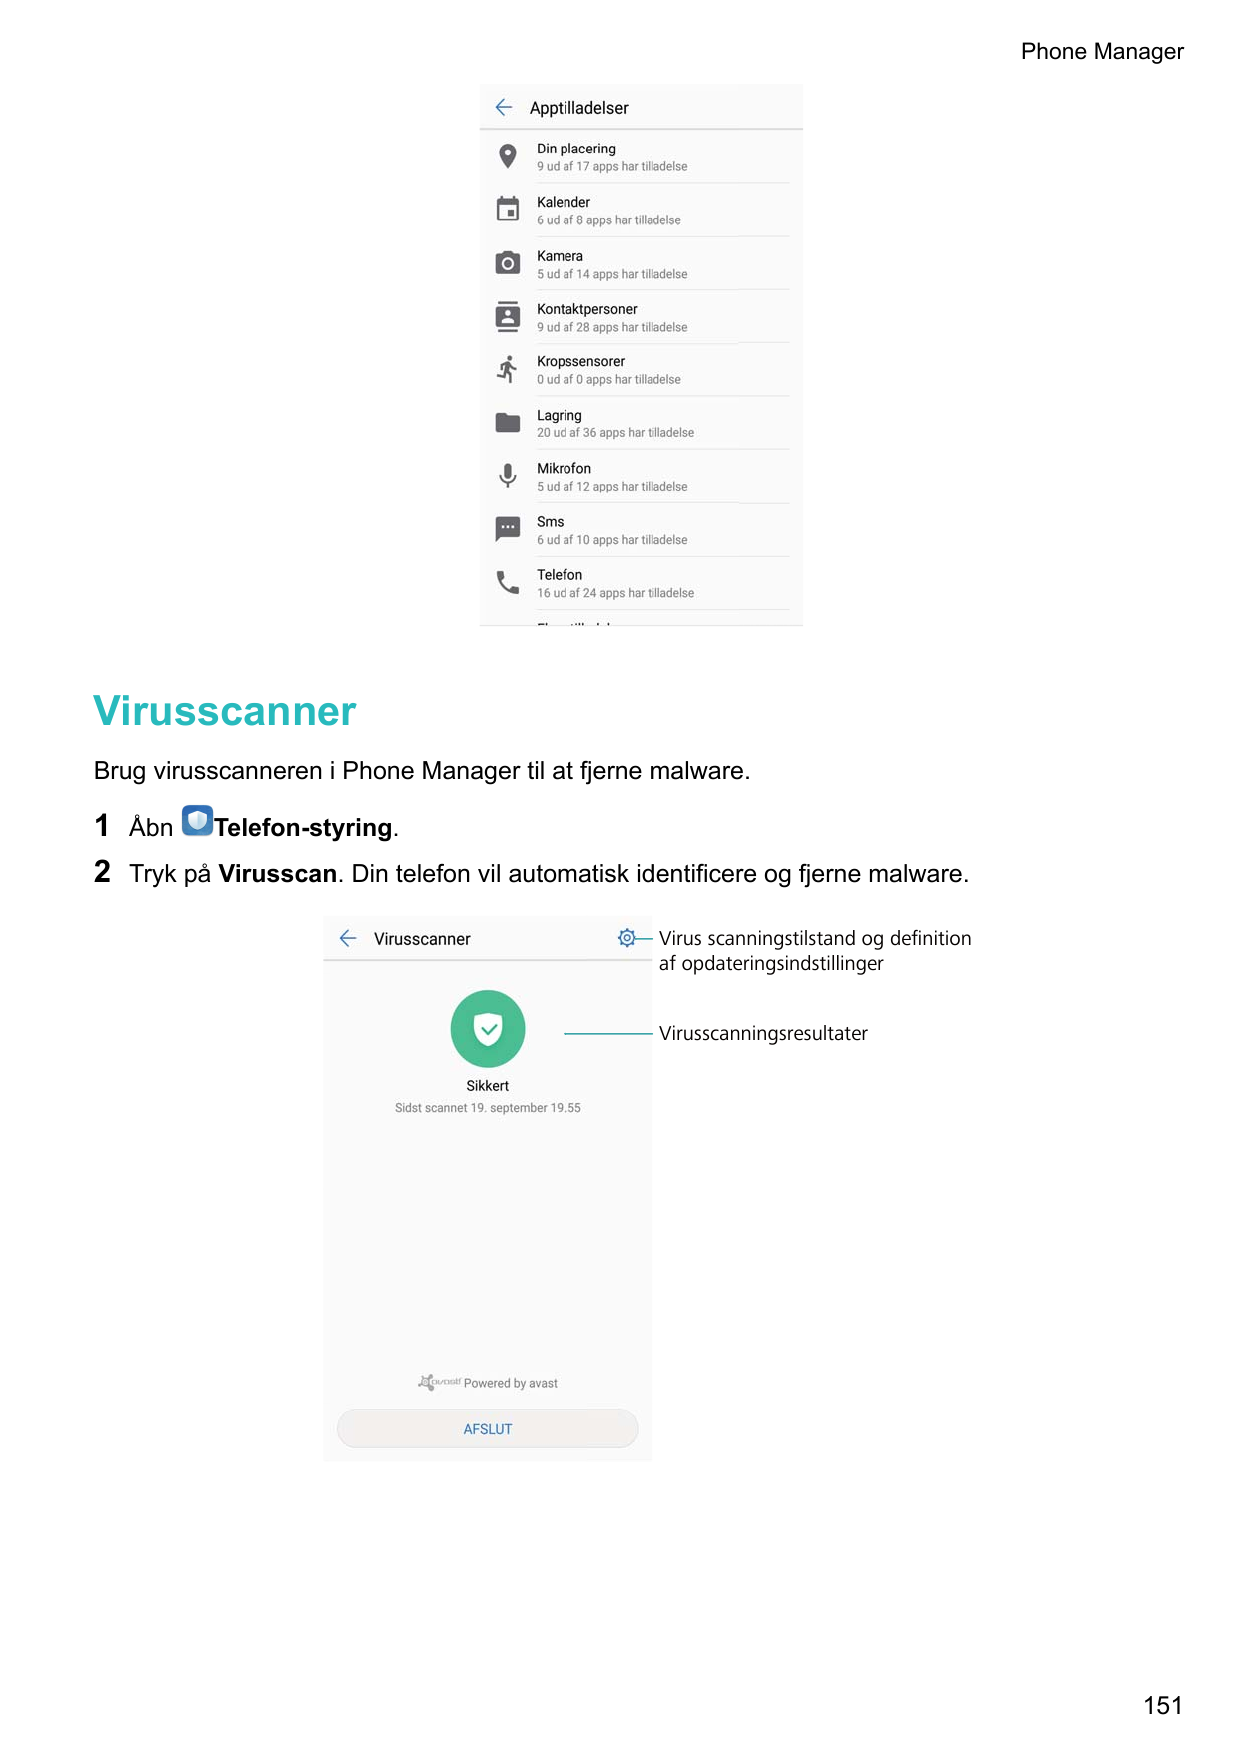 Phone ManagerVirusscannerBrug virusscanneren i Phone Manager til at fjerne malware.12ÅbnTelefon-styring.Tryk på Virusscan. Din t